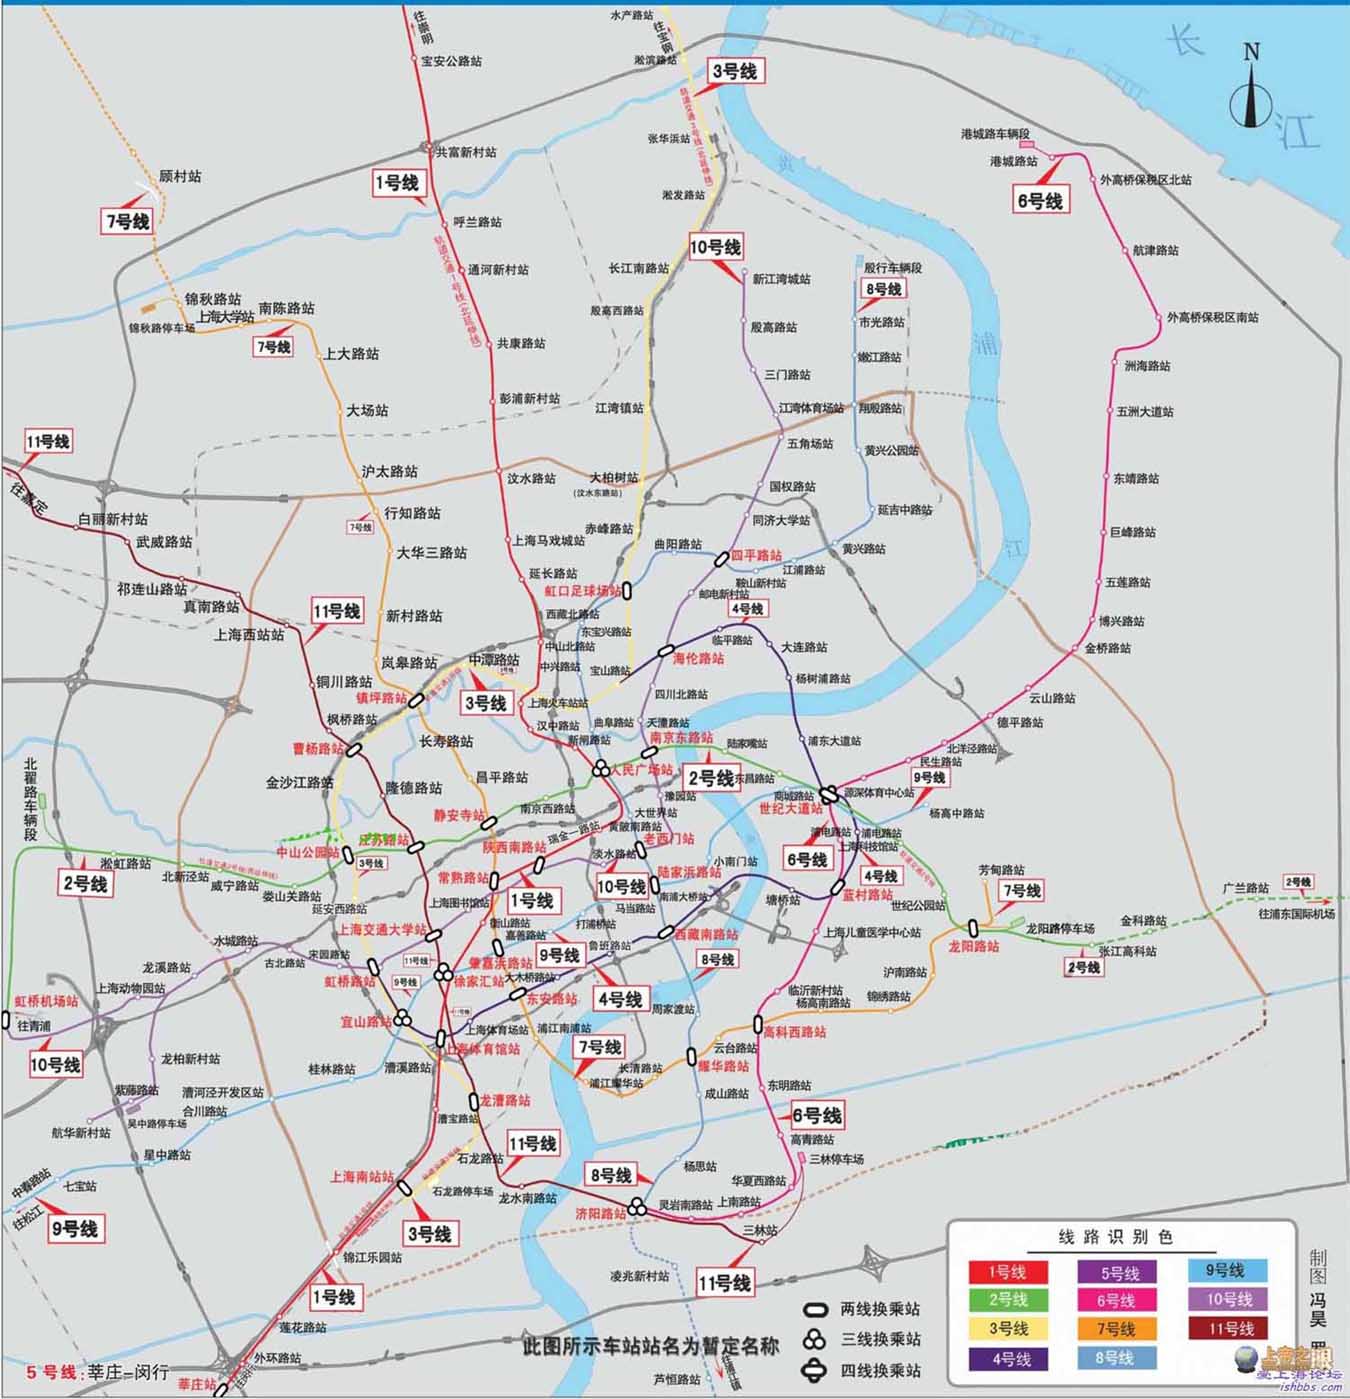 谁知道上海未来10年还要建几条地铁线近几年将要建设开通的地铁线线路图大概经过哪些地方（上海未来的地铁规划）